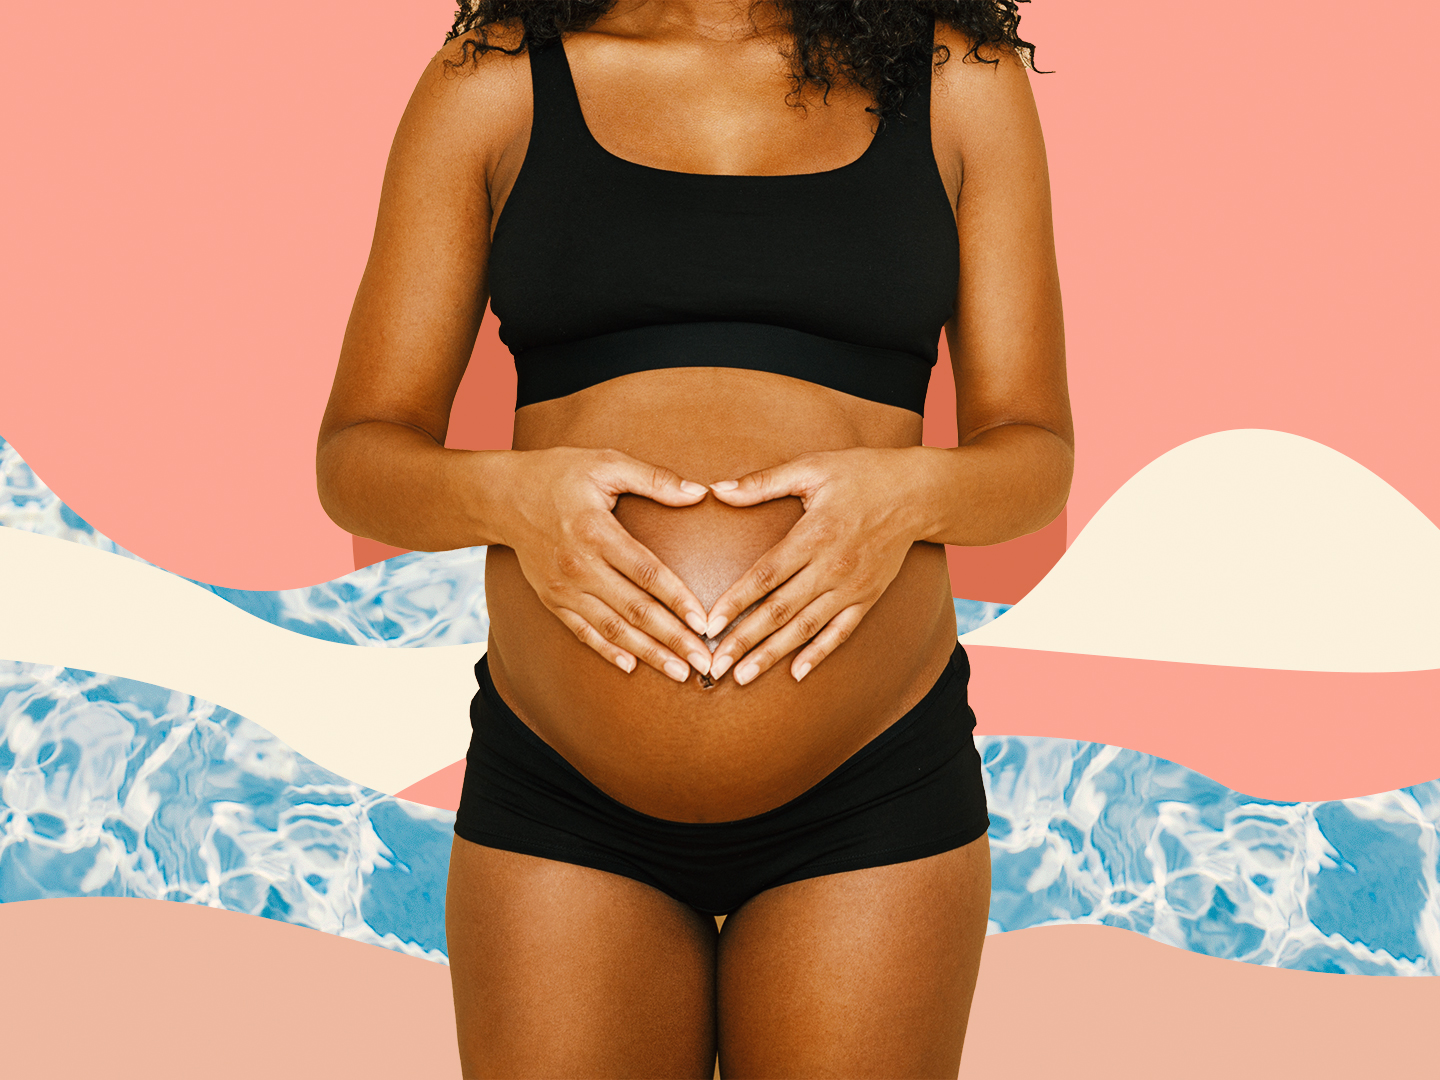 10 Drugs Pregnant Women Should Avoid